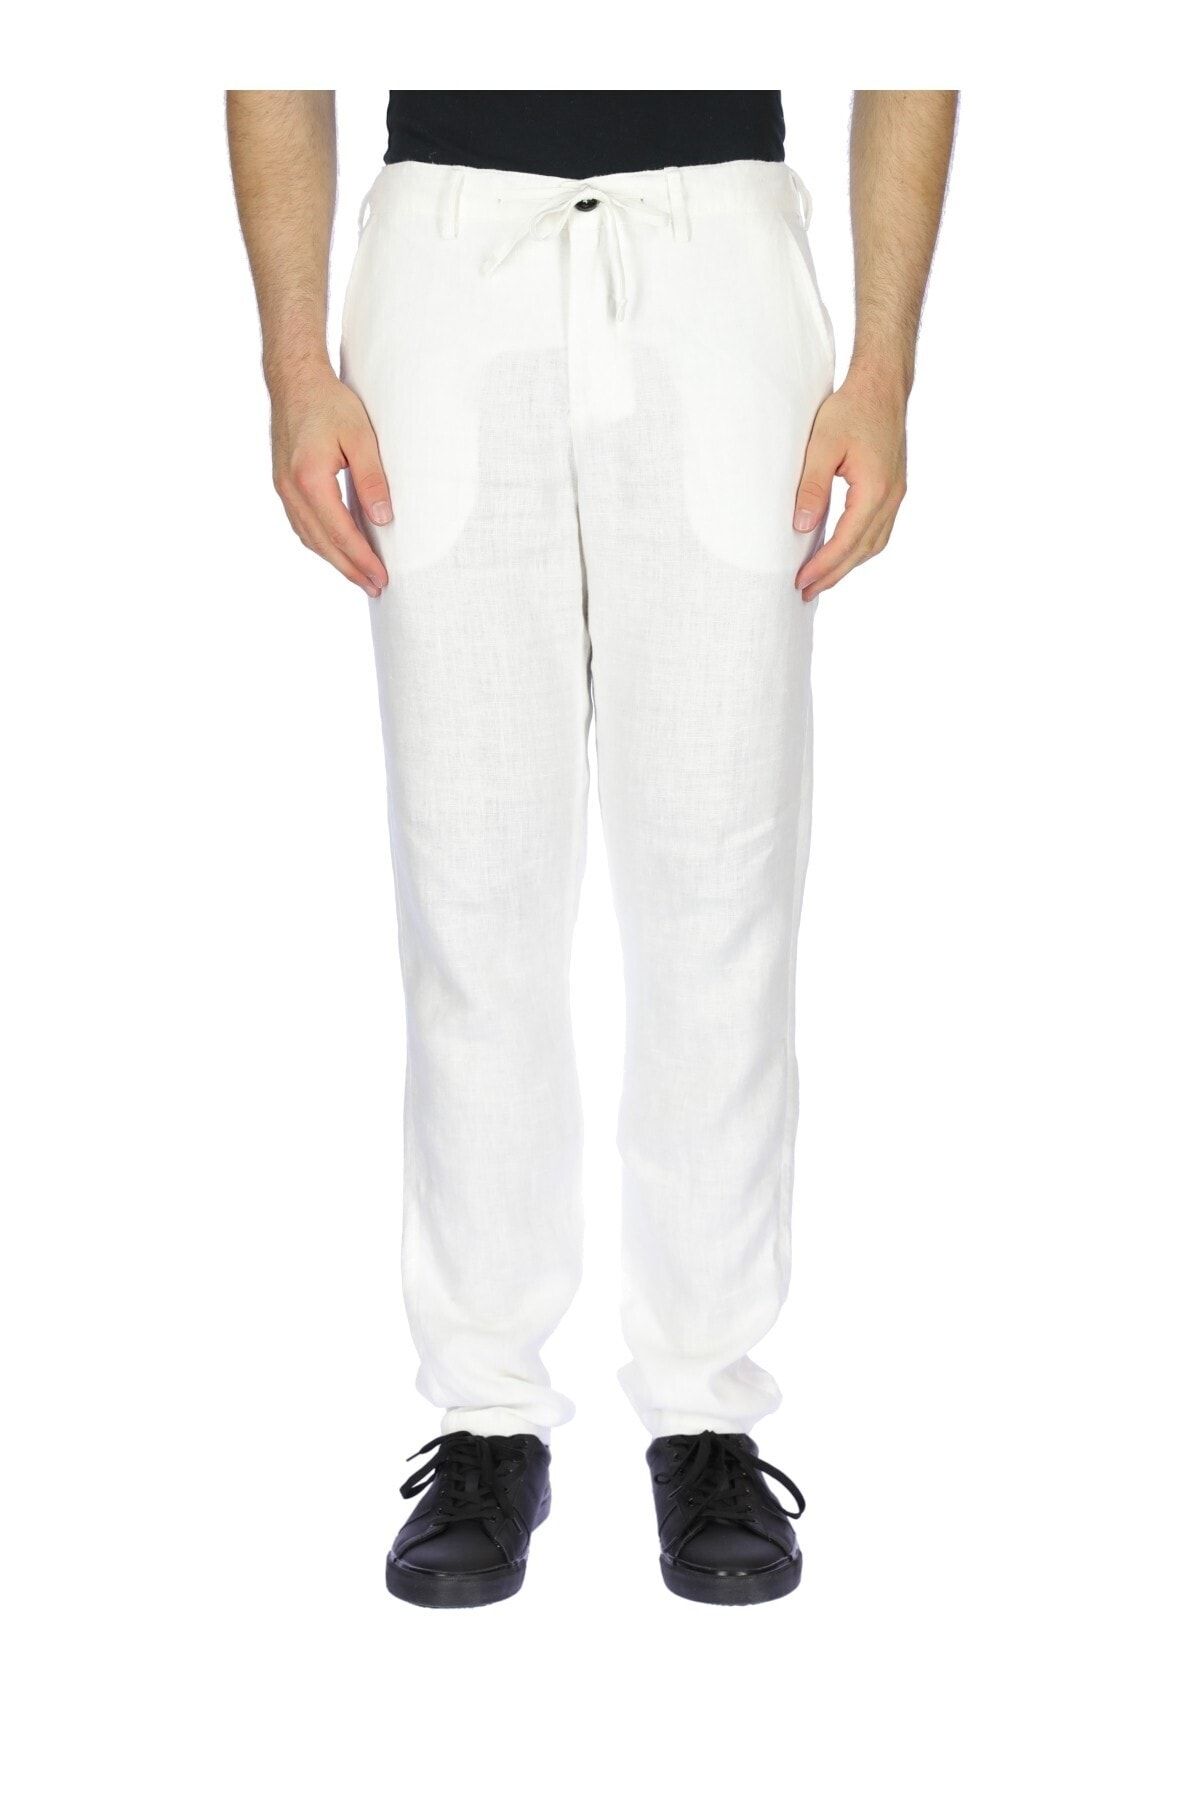 Ruck & Maul Erkek Pantolon 20y135 1000 - Beyaz